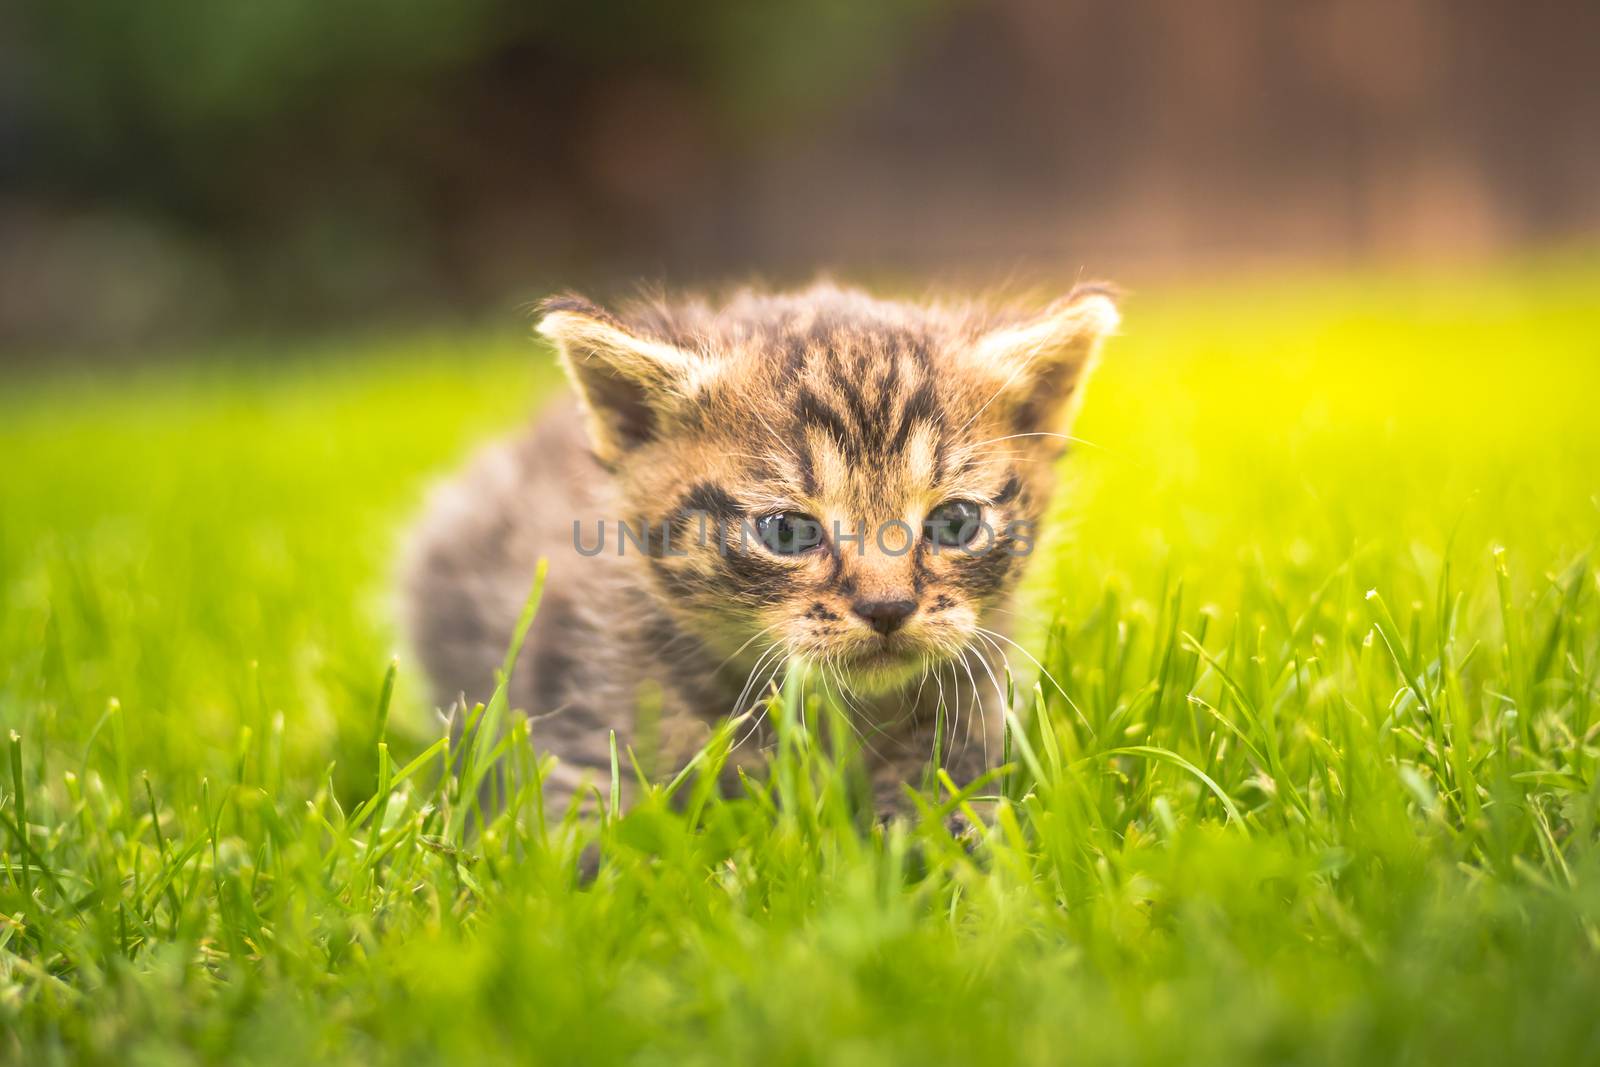 Cute Kitten in the garden in the grass by petrsvoboda91